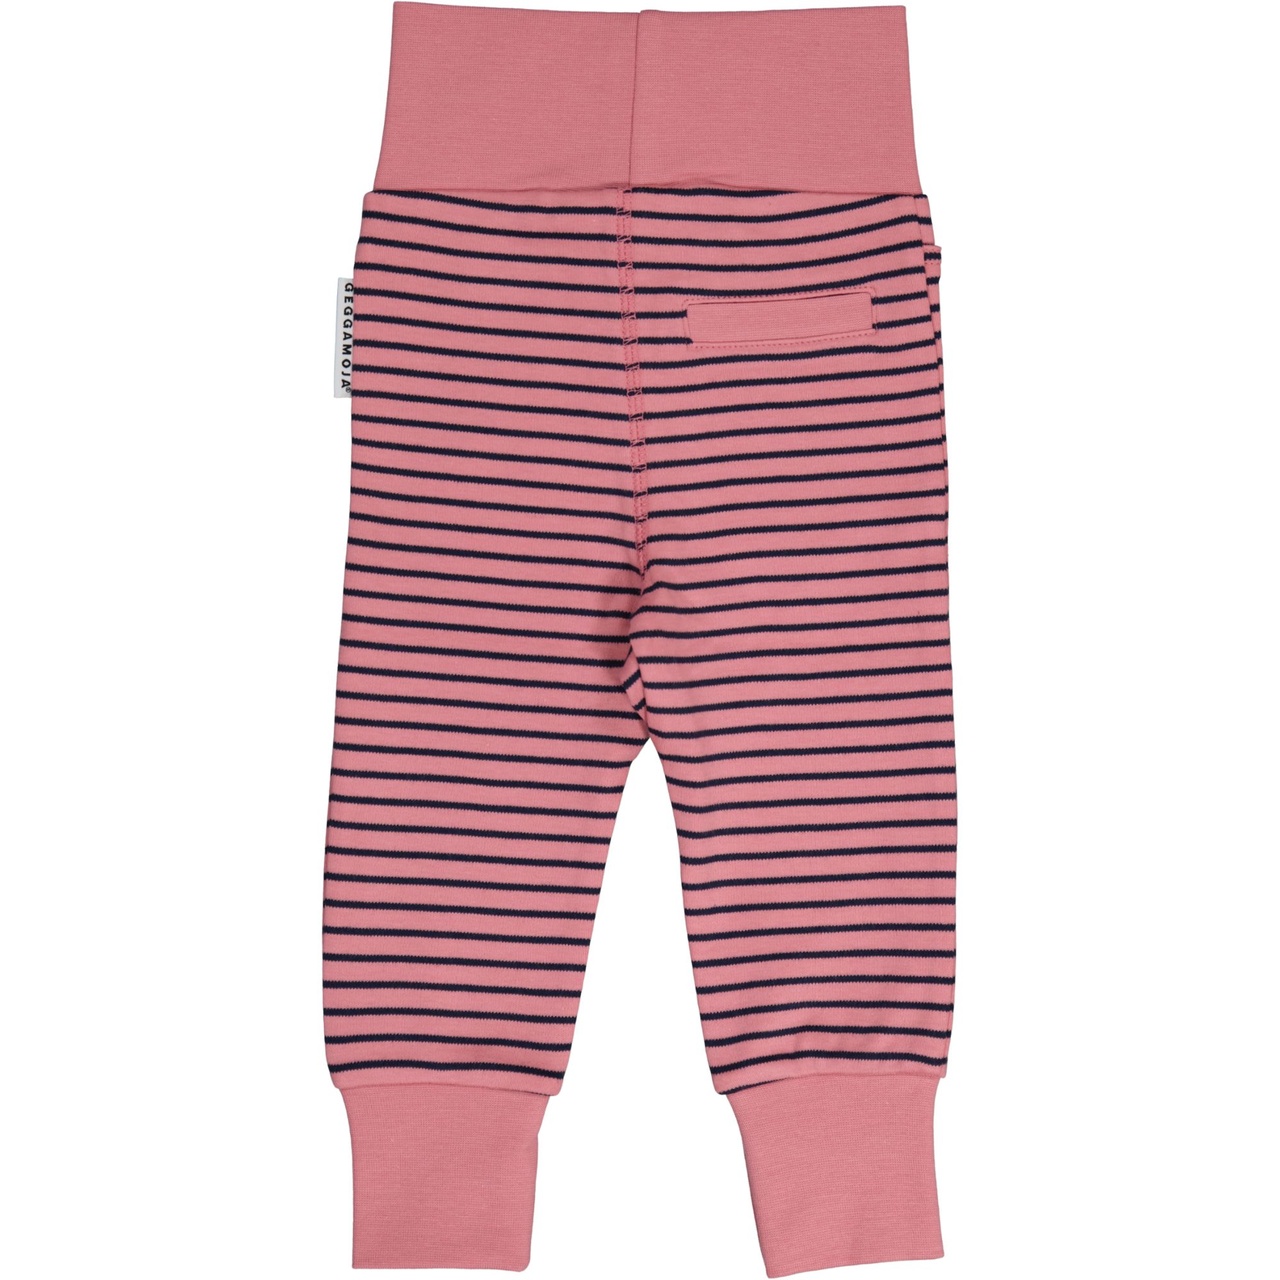 Vauvan housut vaaleanpunainen/laivastonsininen 74/80